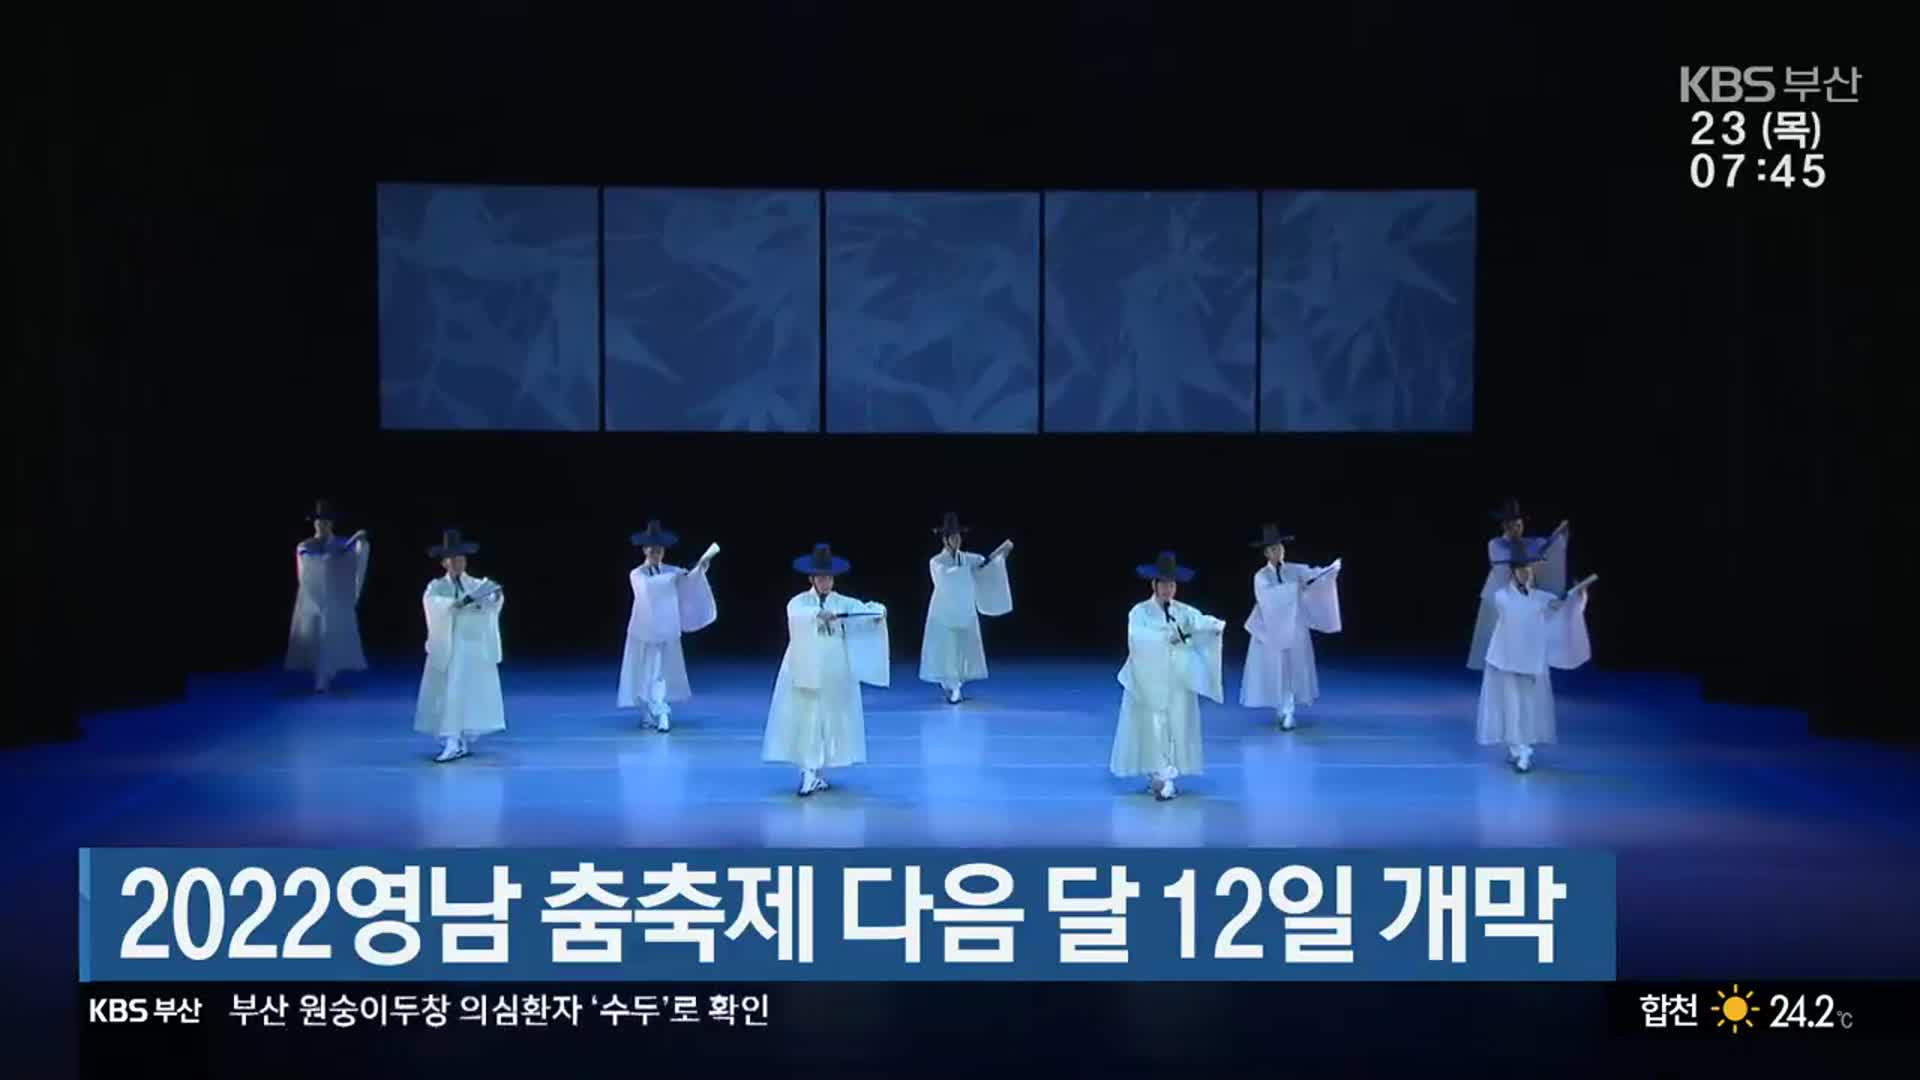 2022영남 춤축제 다음 달 12일 개막